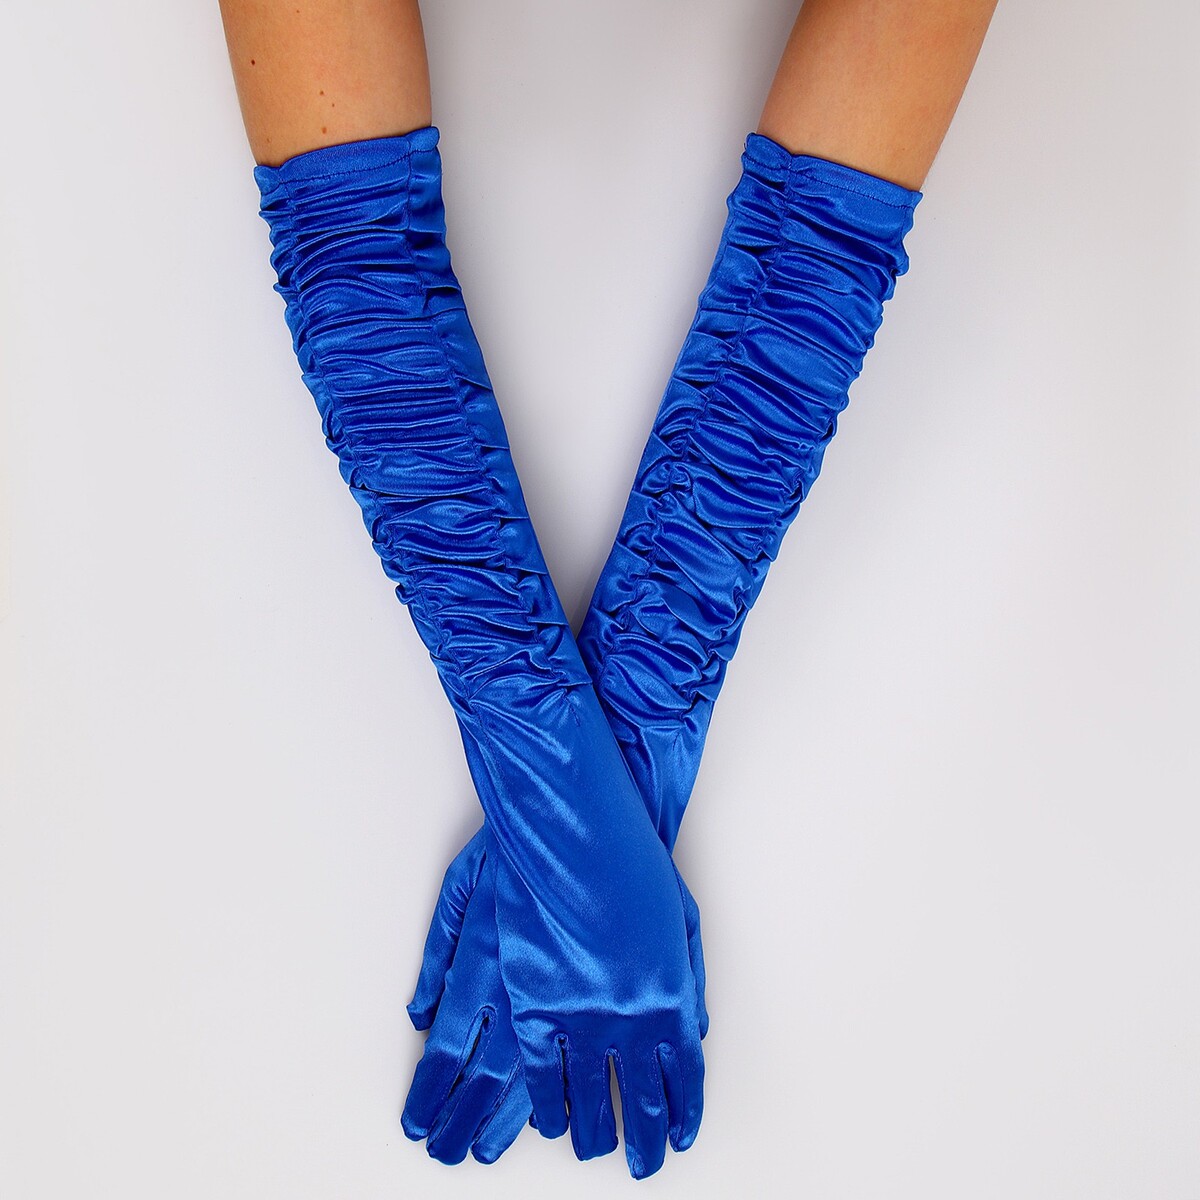 Карнавальный аксессуар - перчатки со сборкой, цвет синий карнавальный аксессуар перчатки со сборкой синий